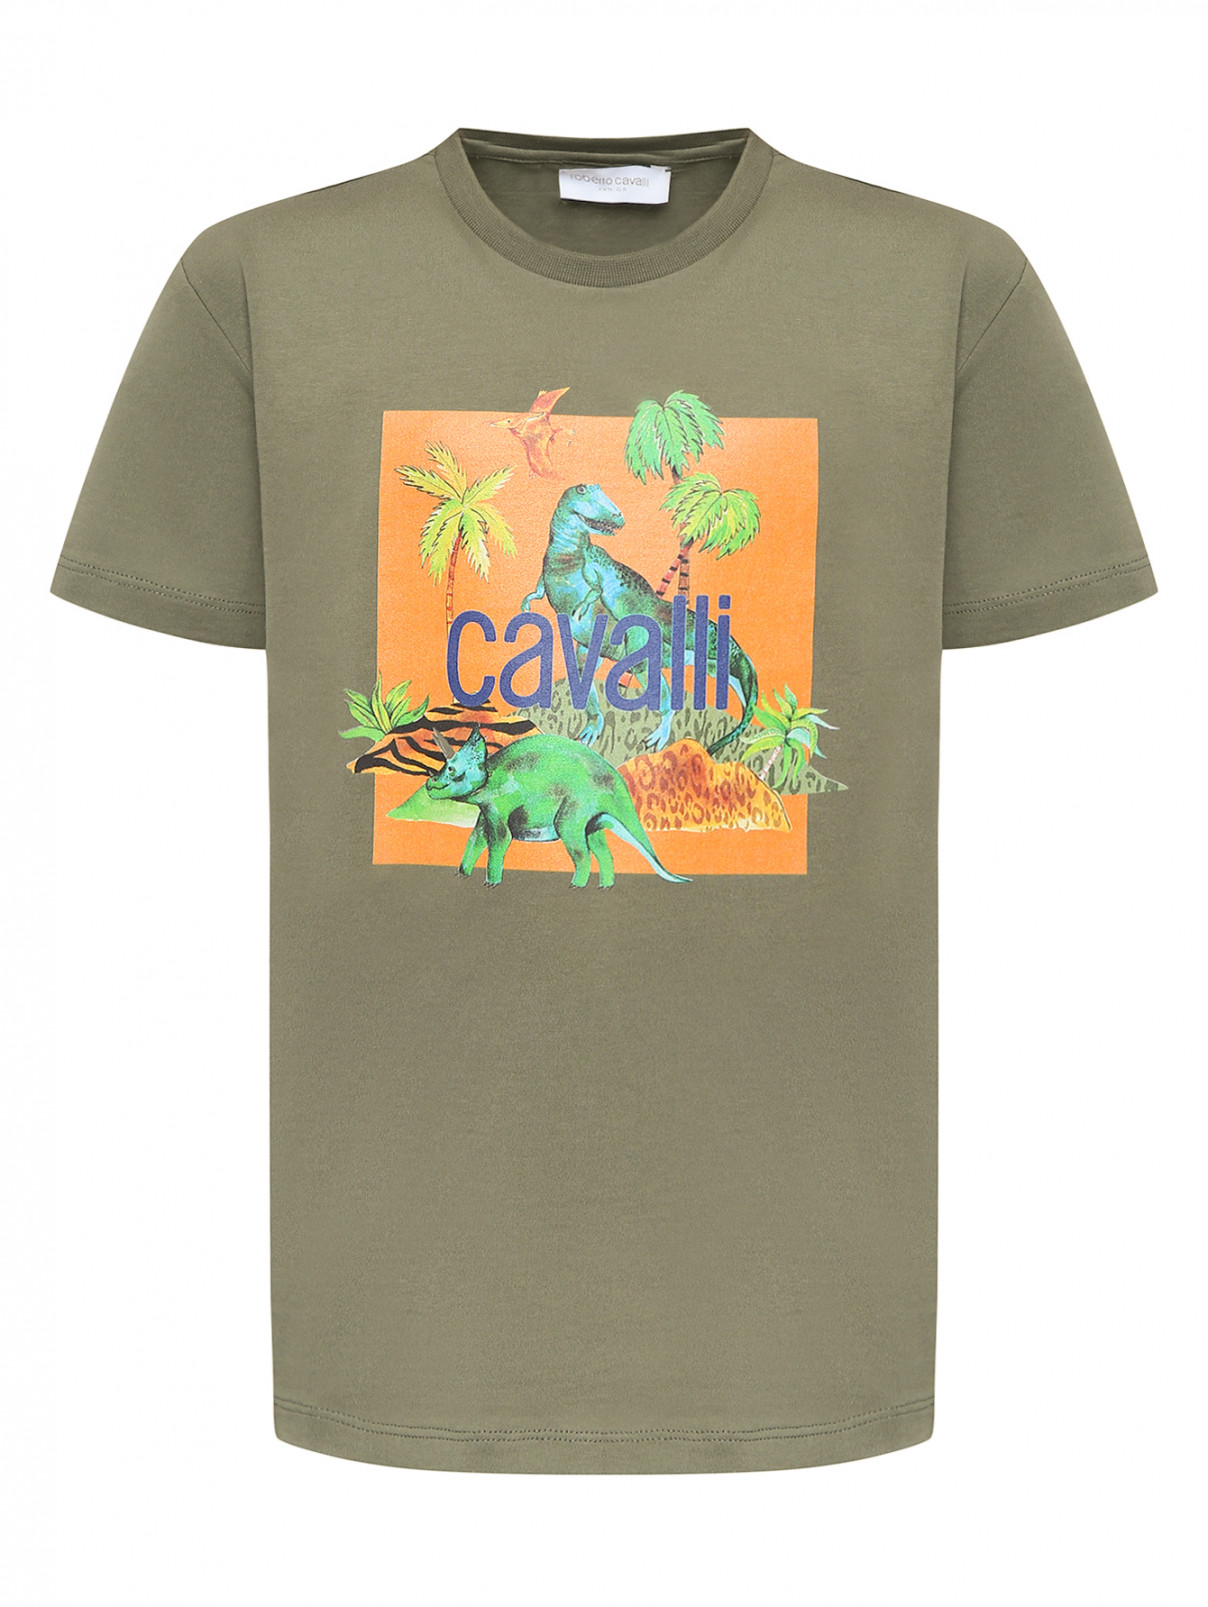 Трикотажная футболка с принтом Roberto Cavalli  –  Общий вид  – Цвет:  Зеленый